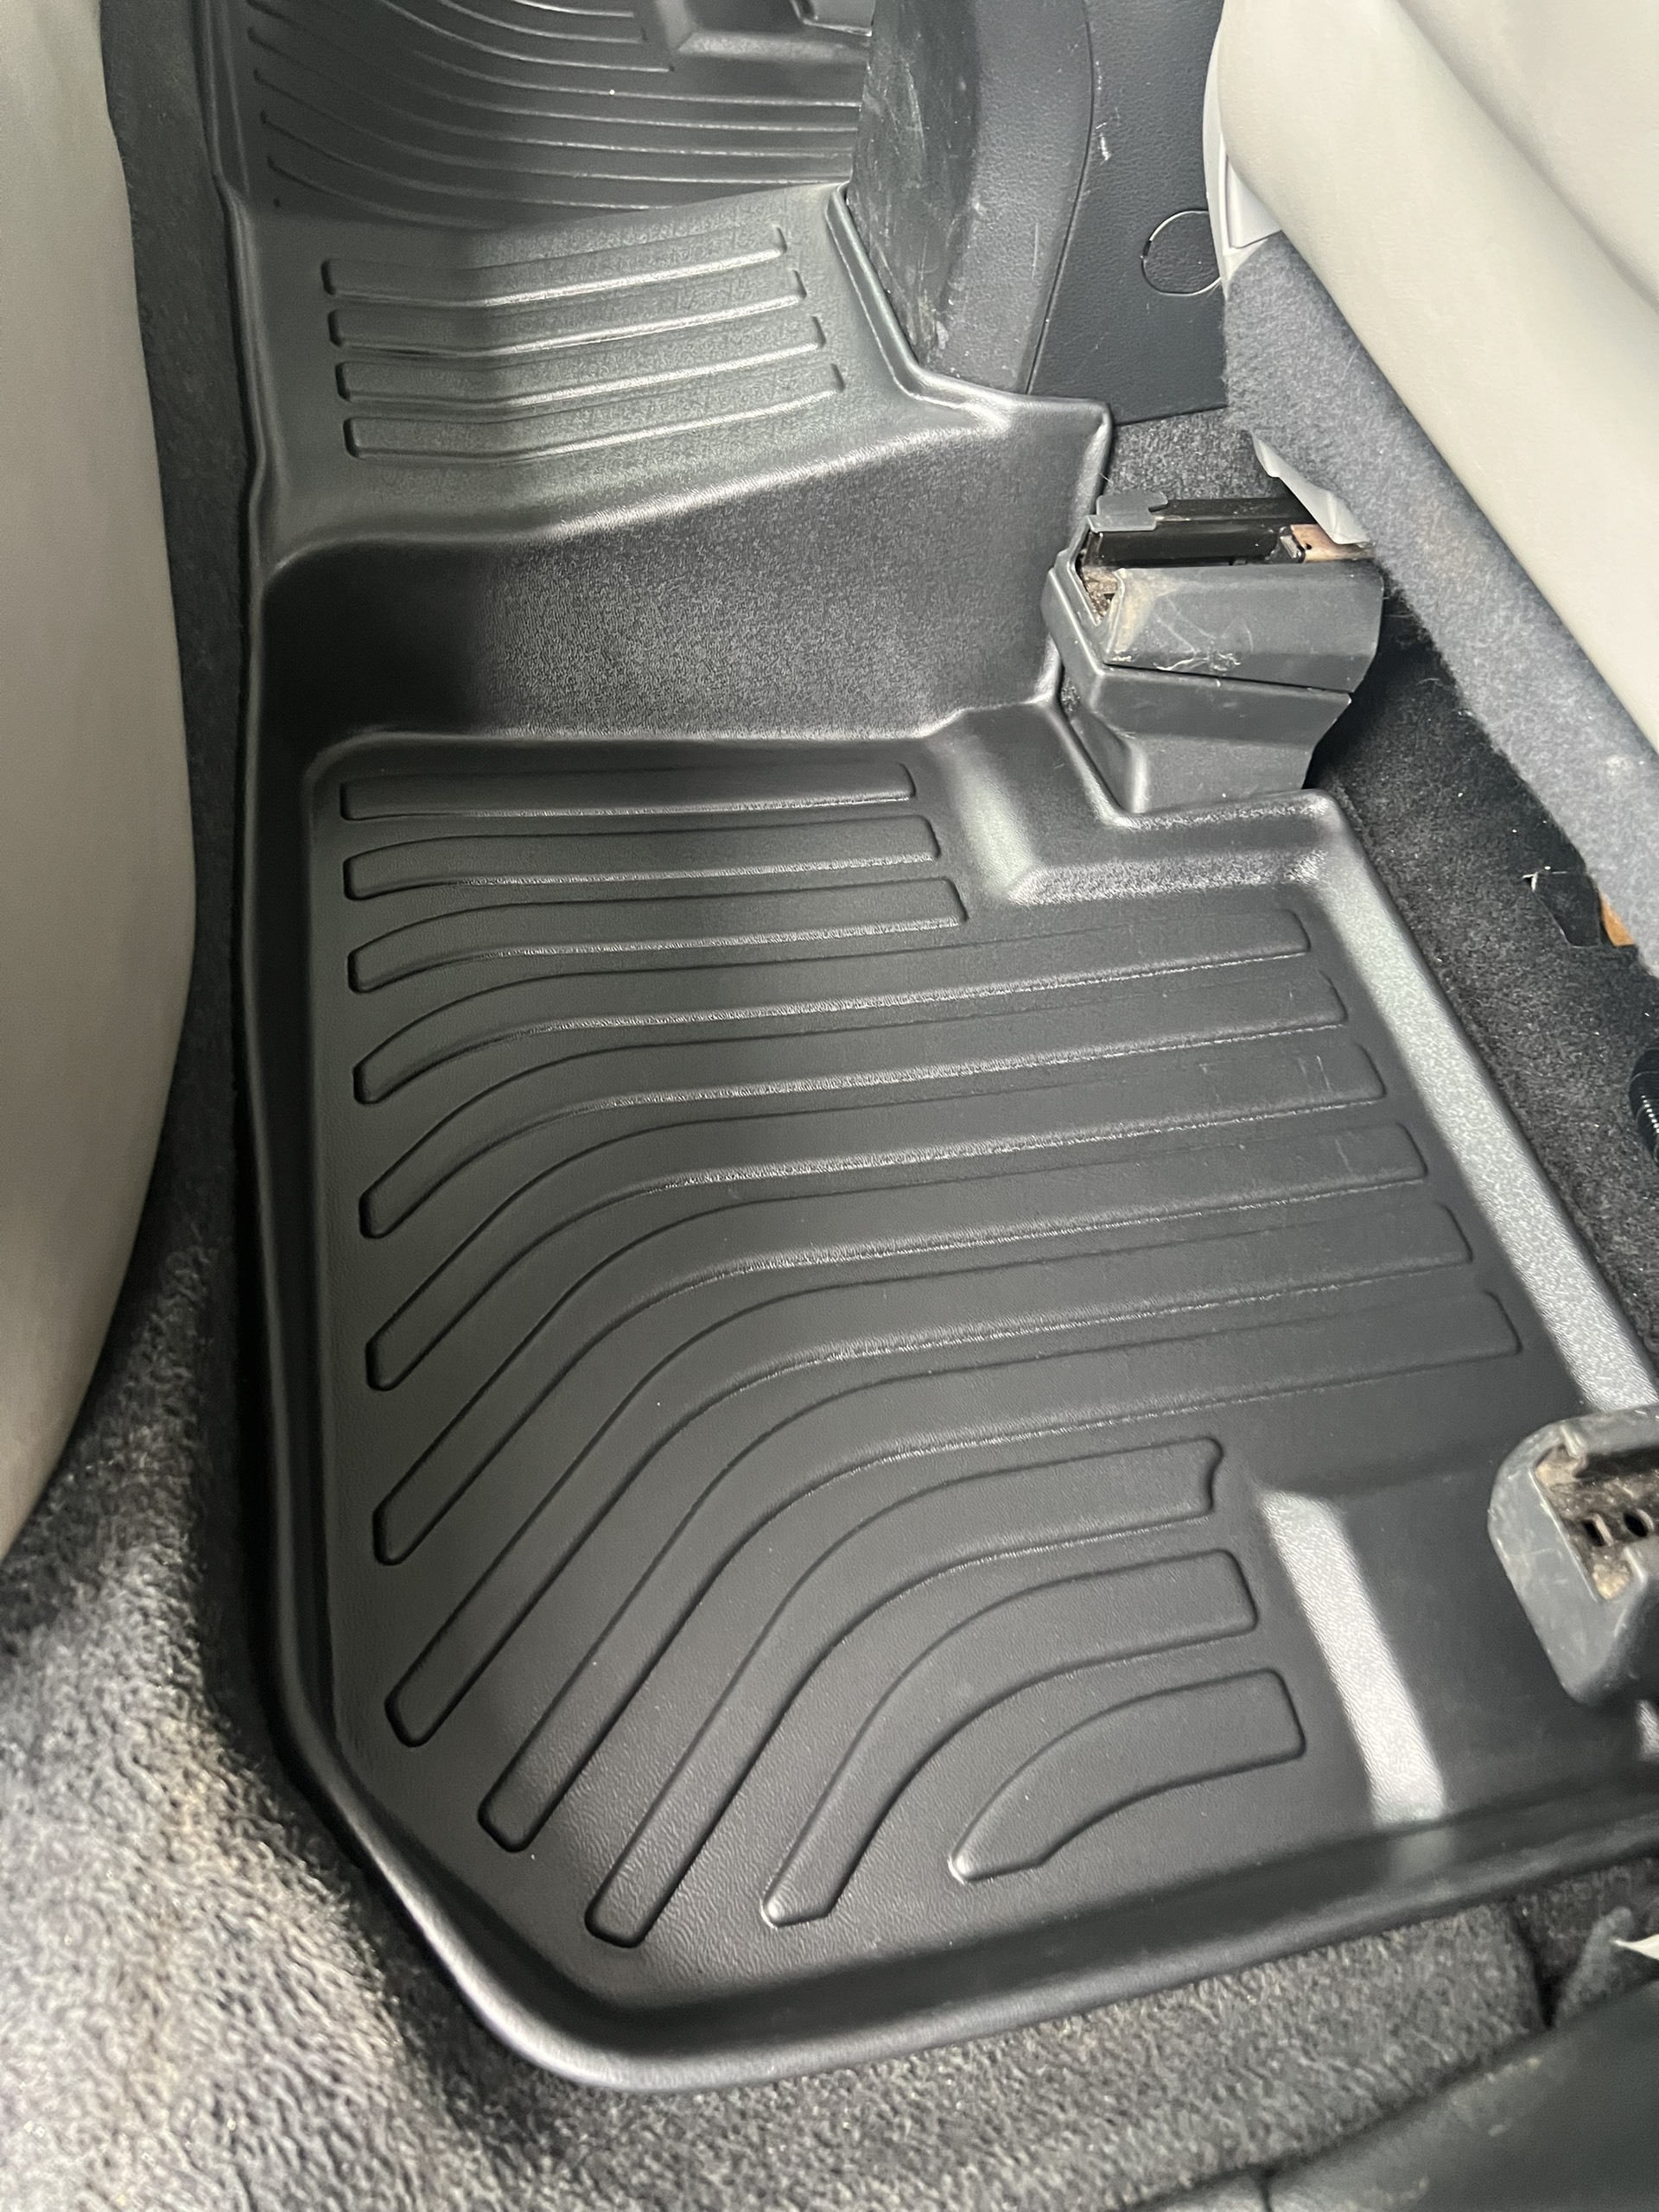 Thảm lót sàn xe Subaru Forester 2013- 2018 Nhãn hiệu Macsim chất liệu nhựa TPV cao cấp màu đen